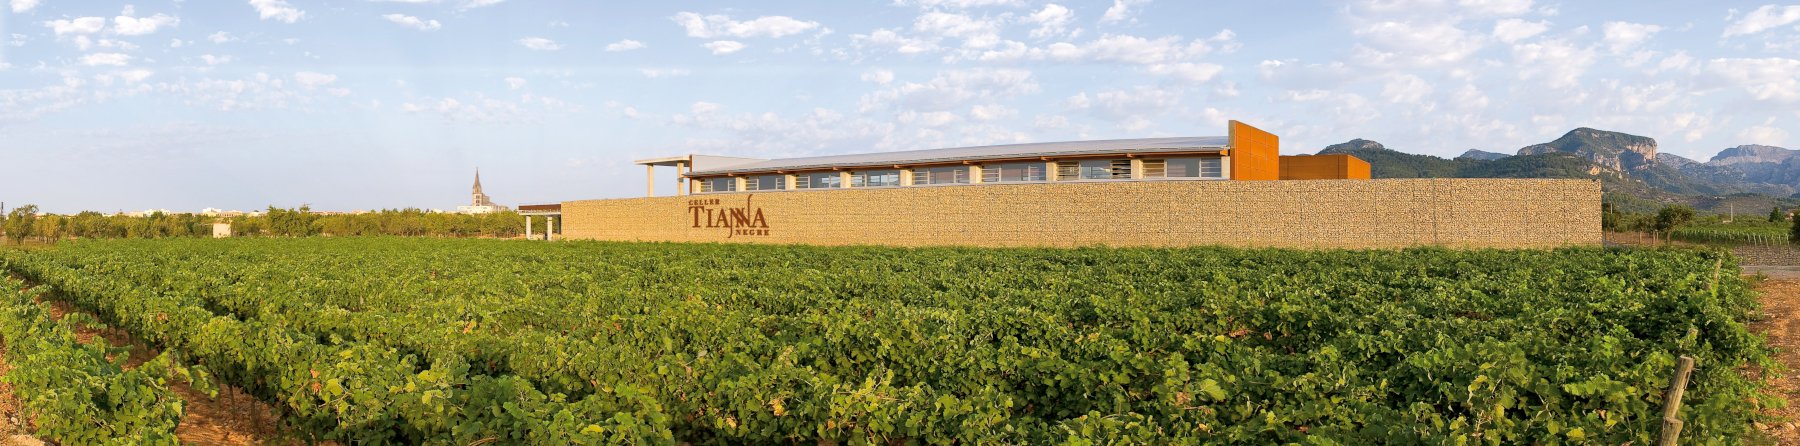 Tianna Negre Mallorca Wein